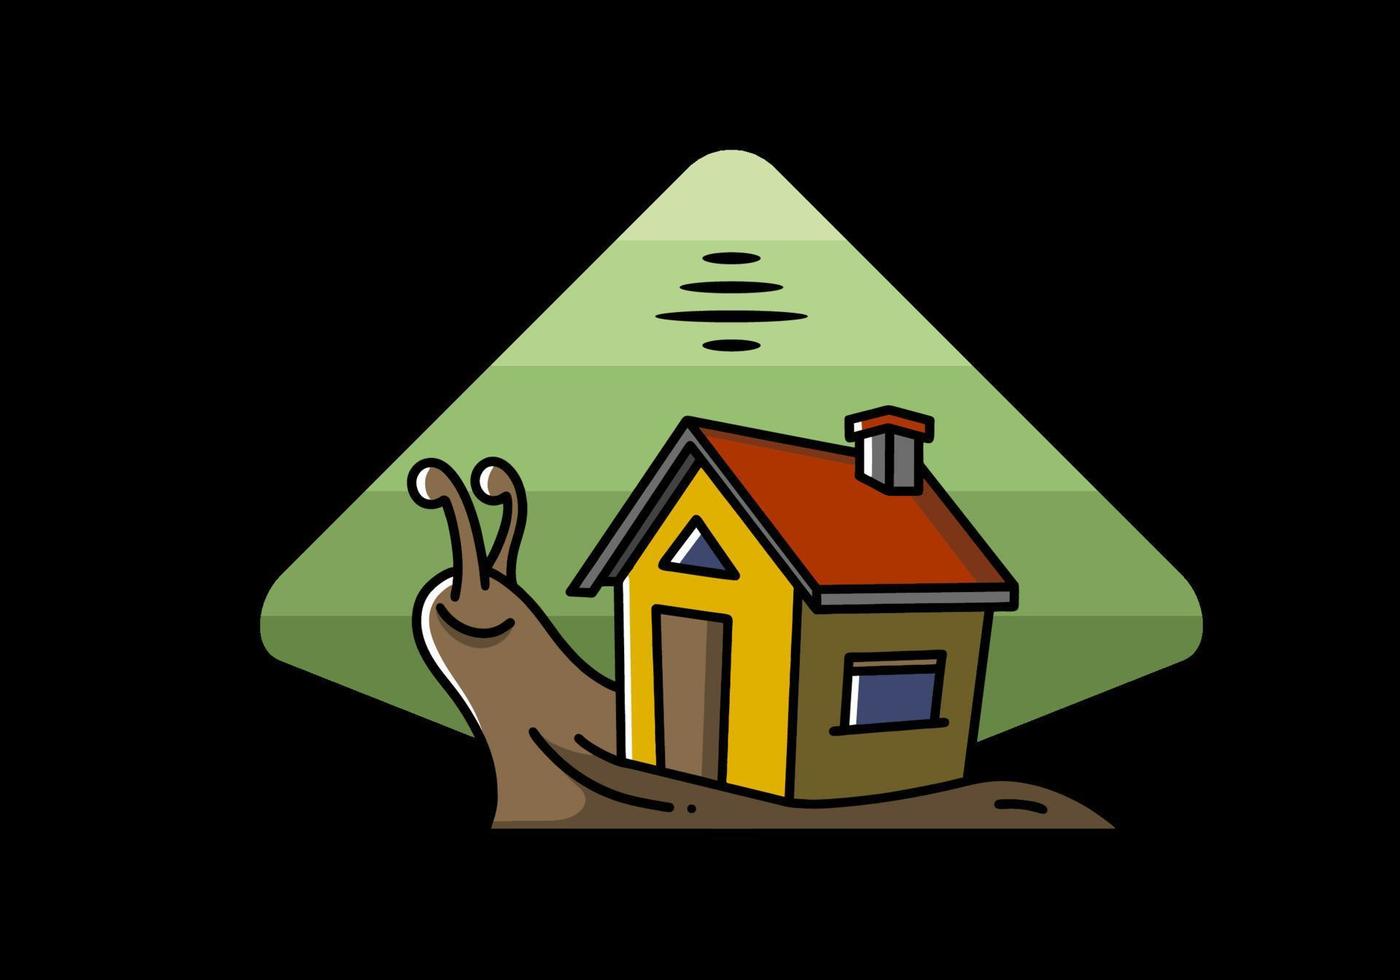 disegno dell'illustrazione della casa e della lumaca che cammina vettore